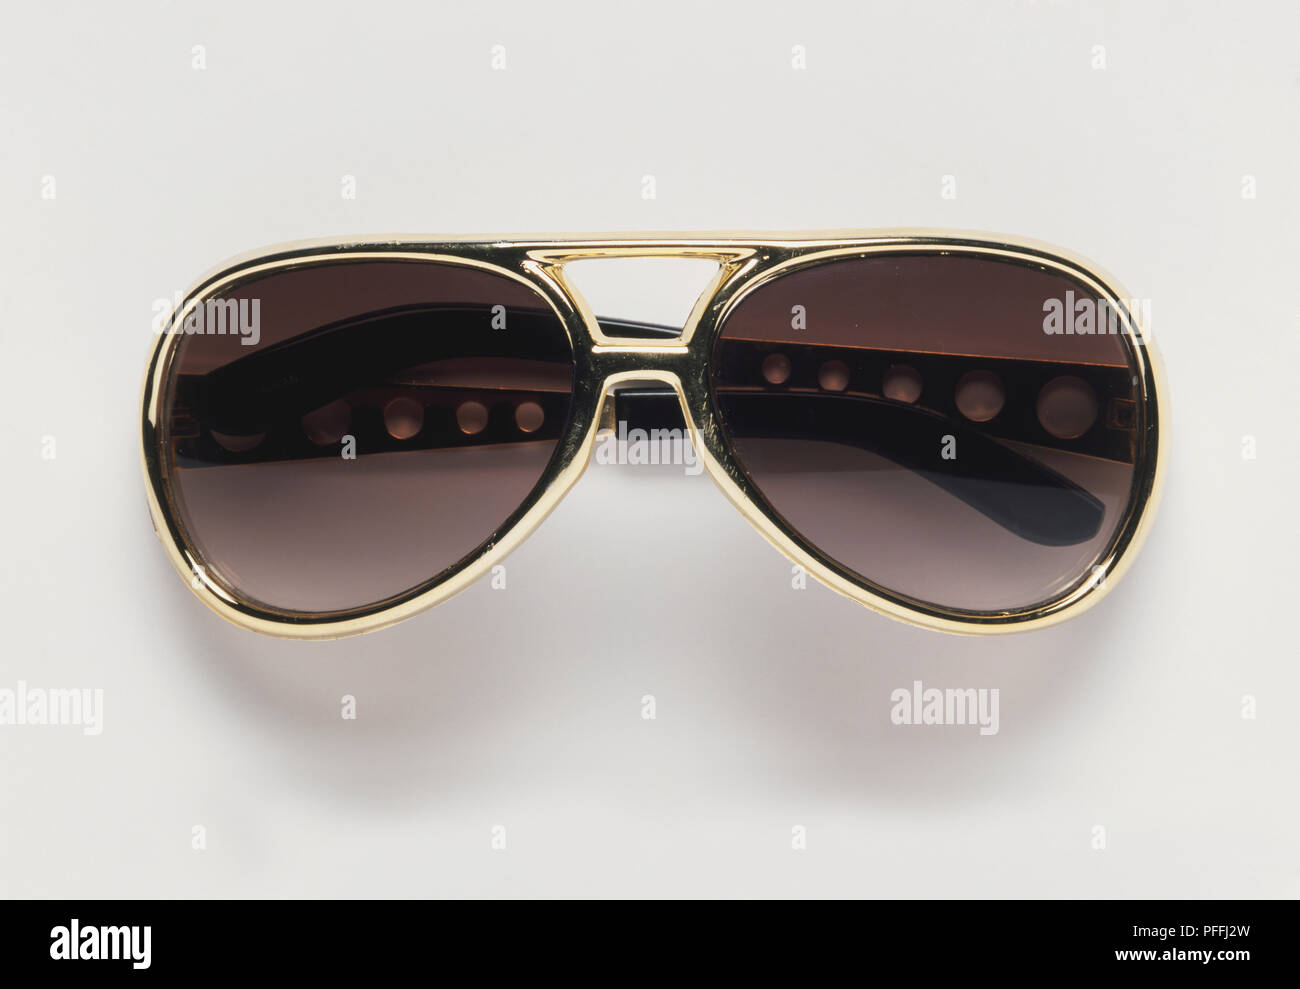 1970s retro Elvis Presley style sunglasses. Stock Photo